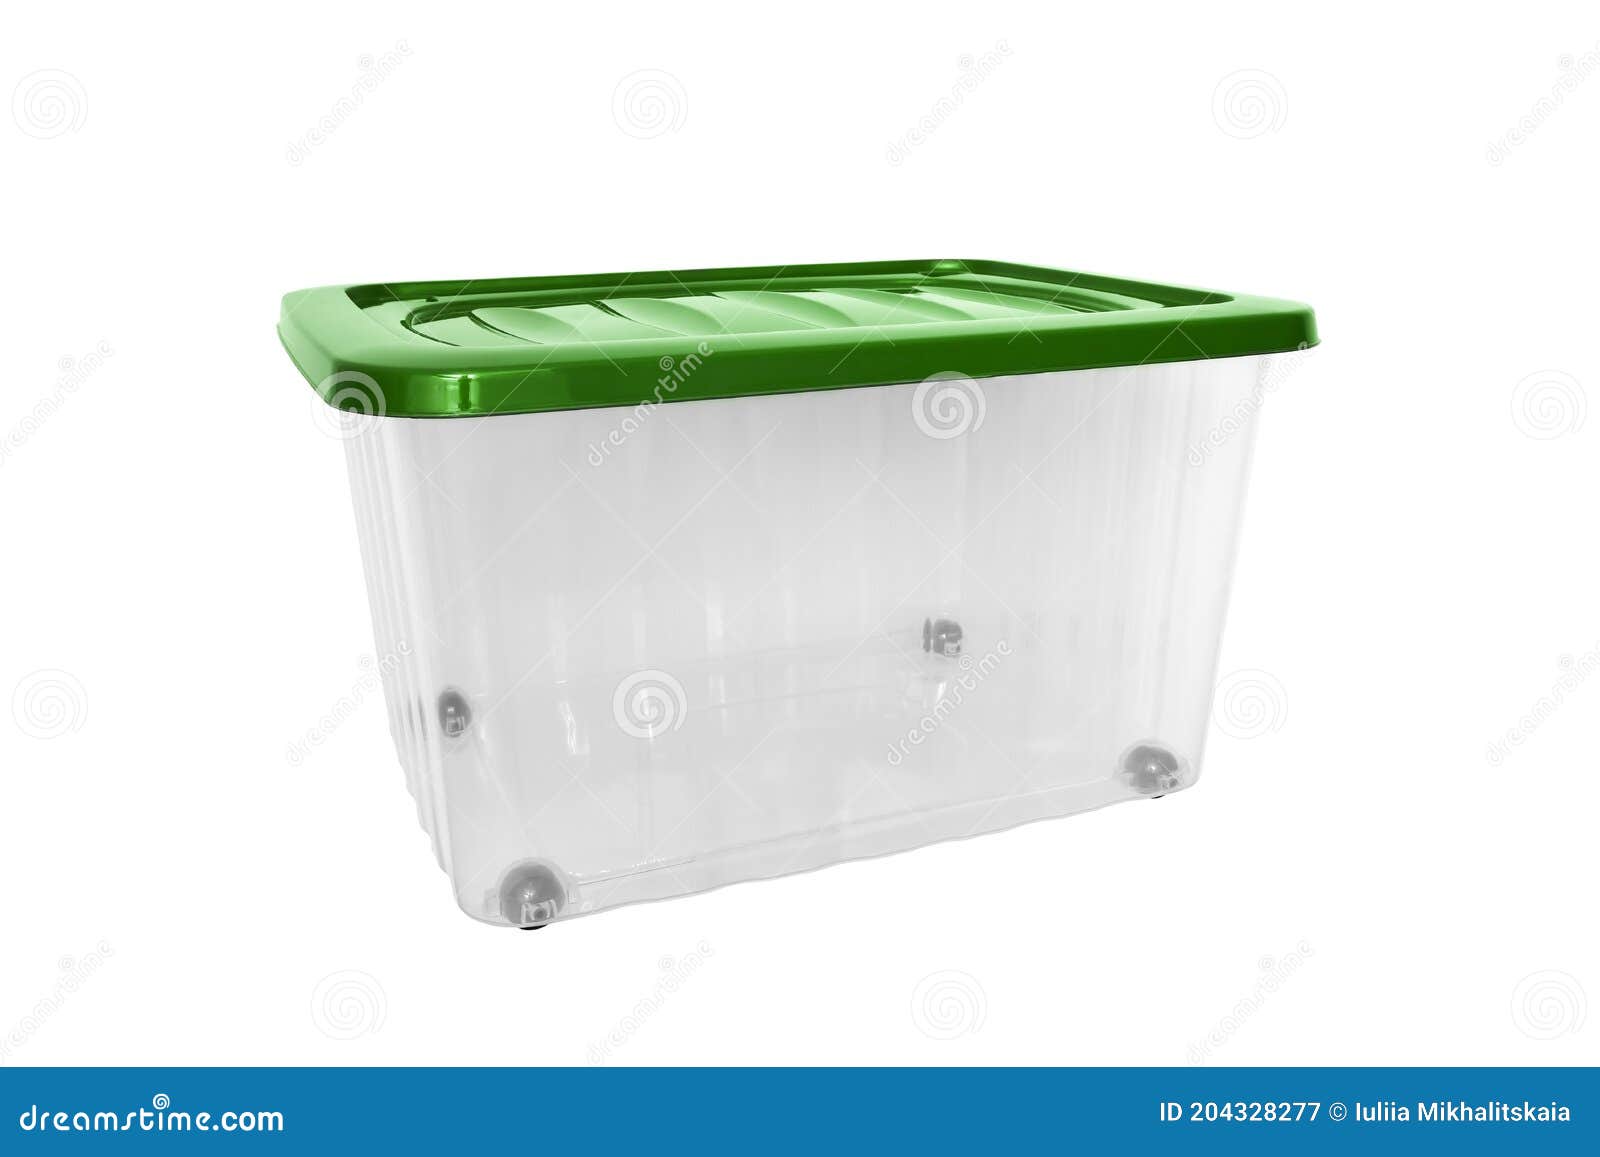 Una Caja De Almacenamiento Portátil Grande De Transparente De En Las Con La Verde Para El Equipo Imagen de archivo - Imagen de casero, general: 204328277